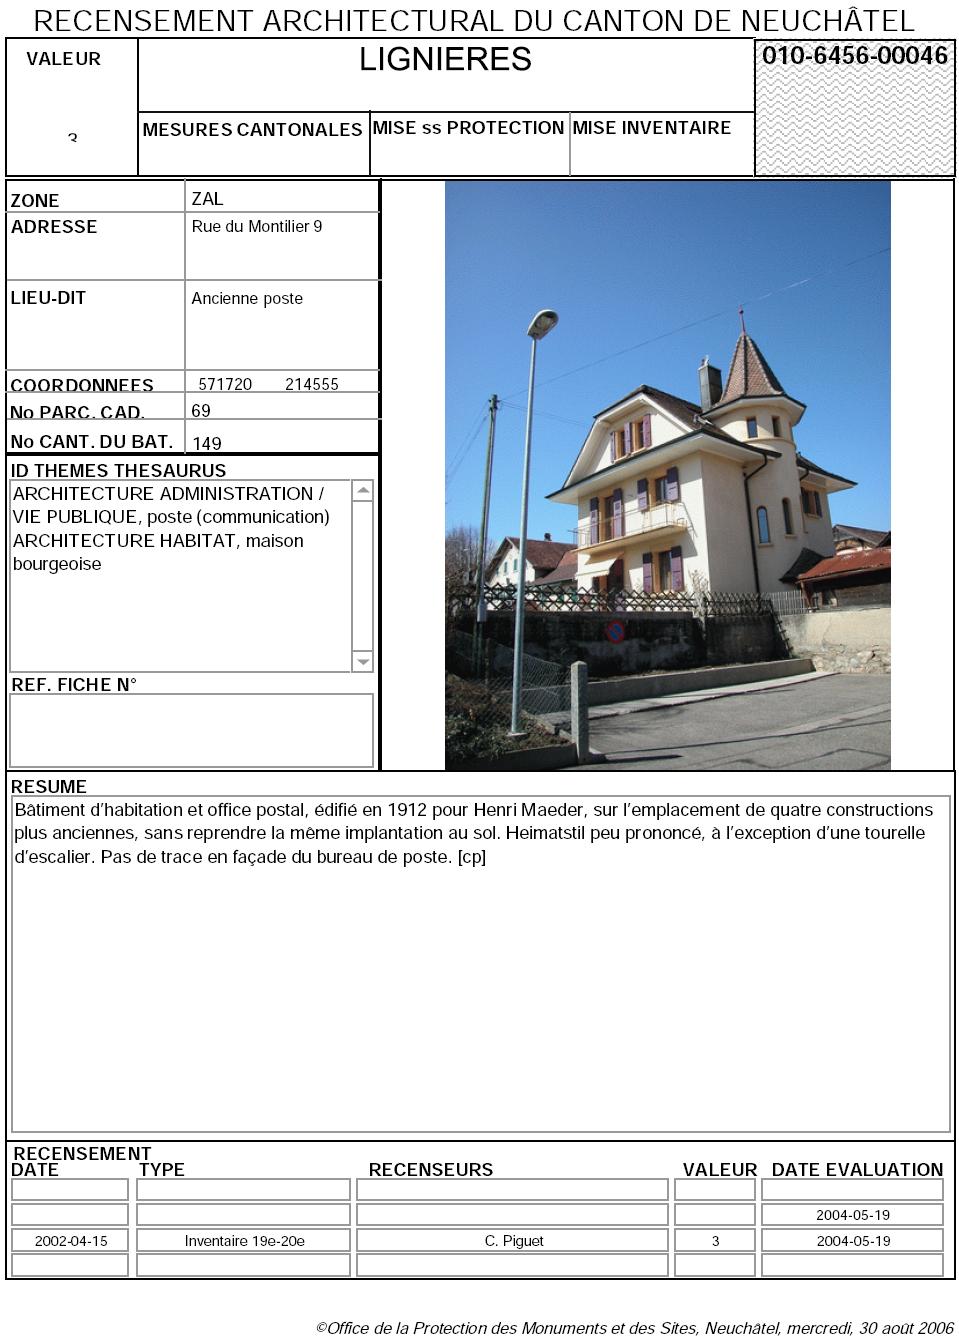 Recensement architectural du canton de Neuchâtel: Fiche 010-6456-00046